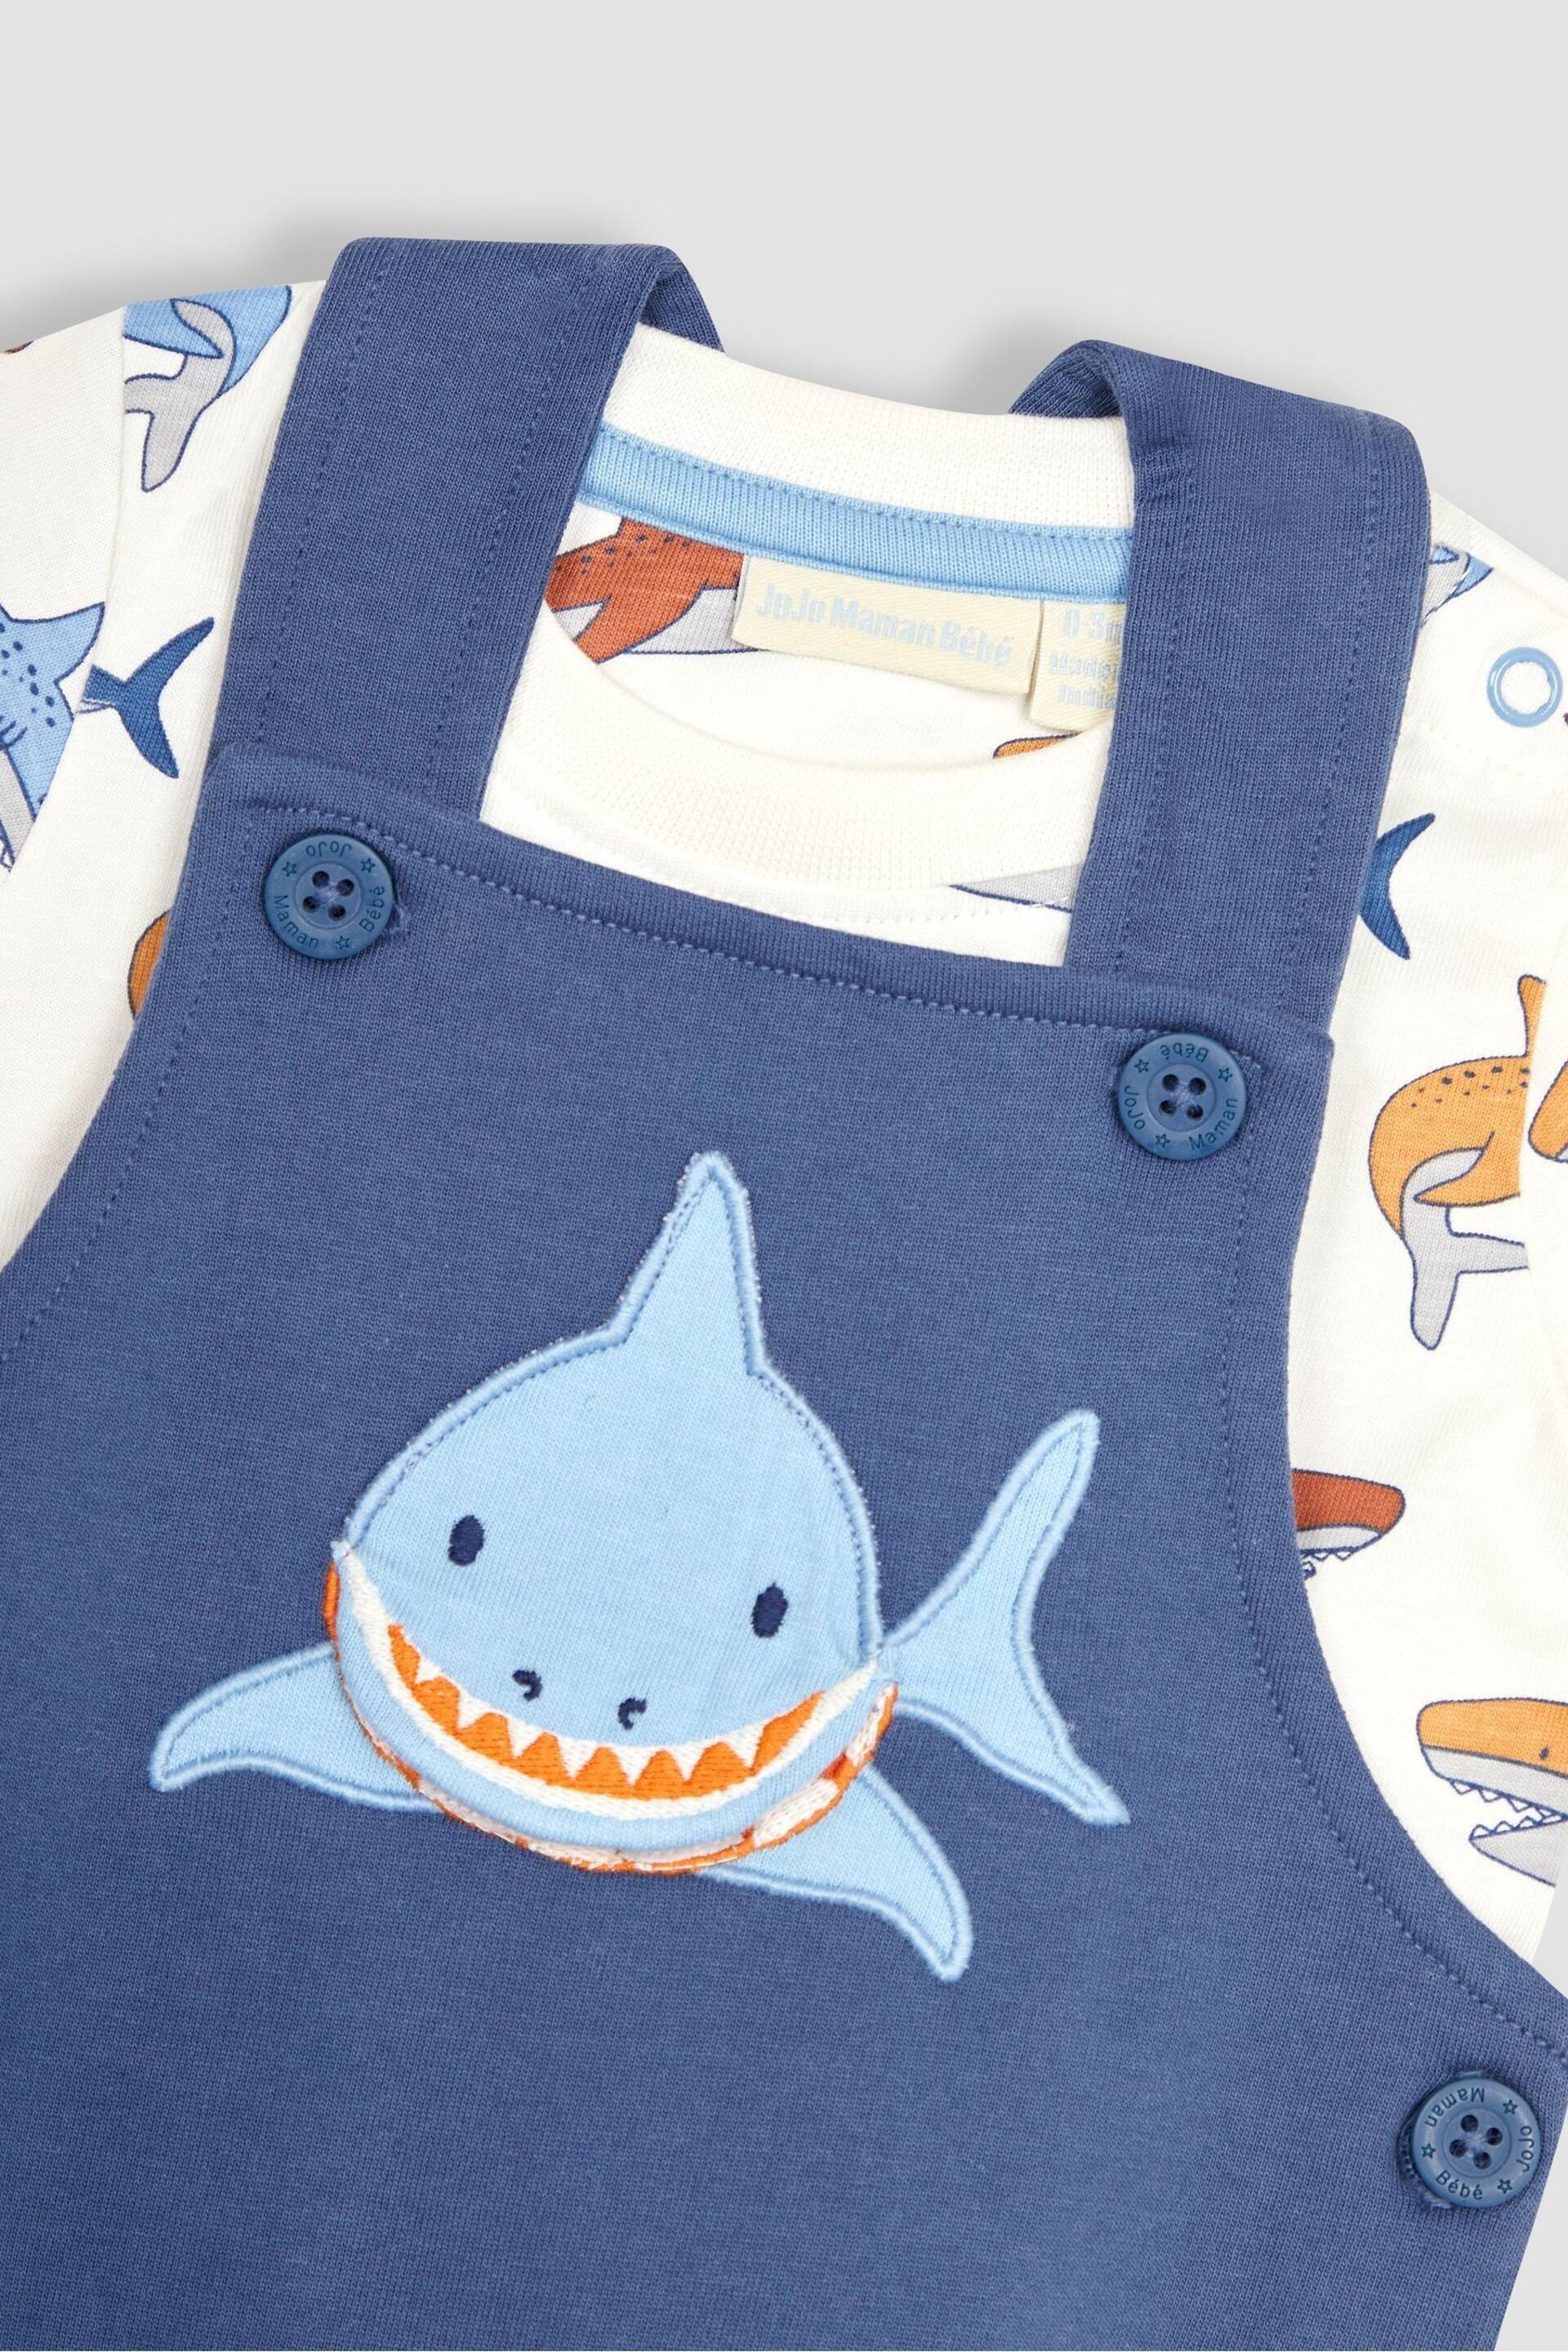 JoJo Maman Bébé Navy Blue Shark Appliqué Trouser Dungarees & T-Shirt Set - Image 6 of 7